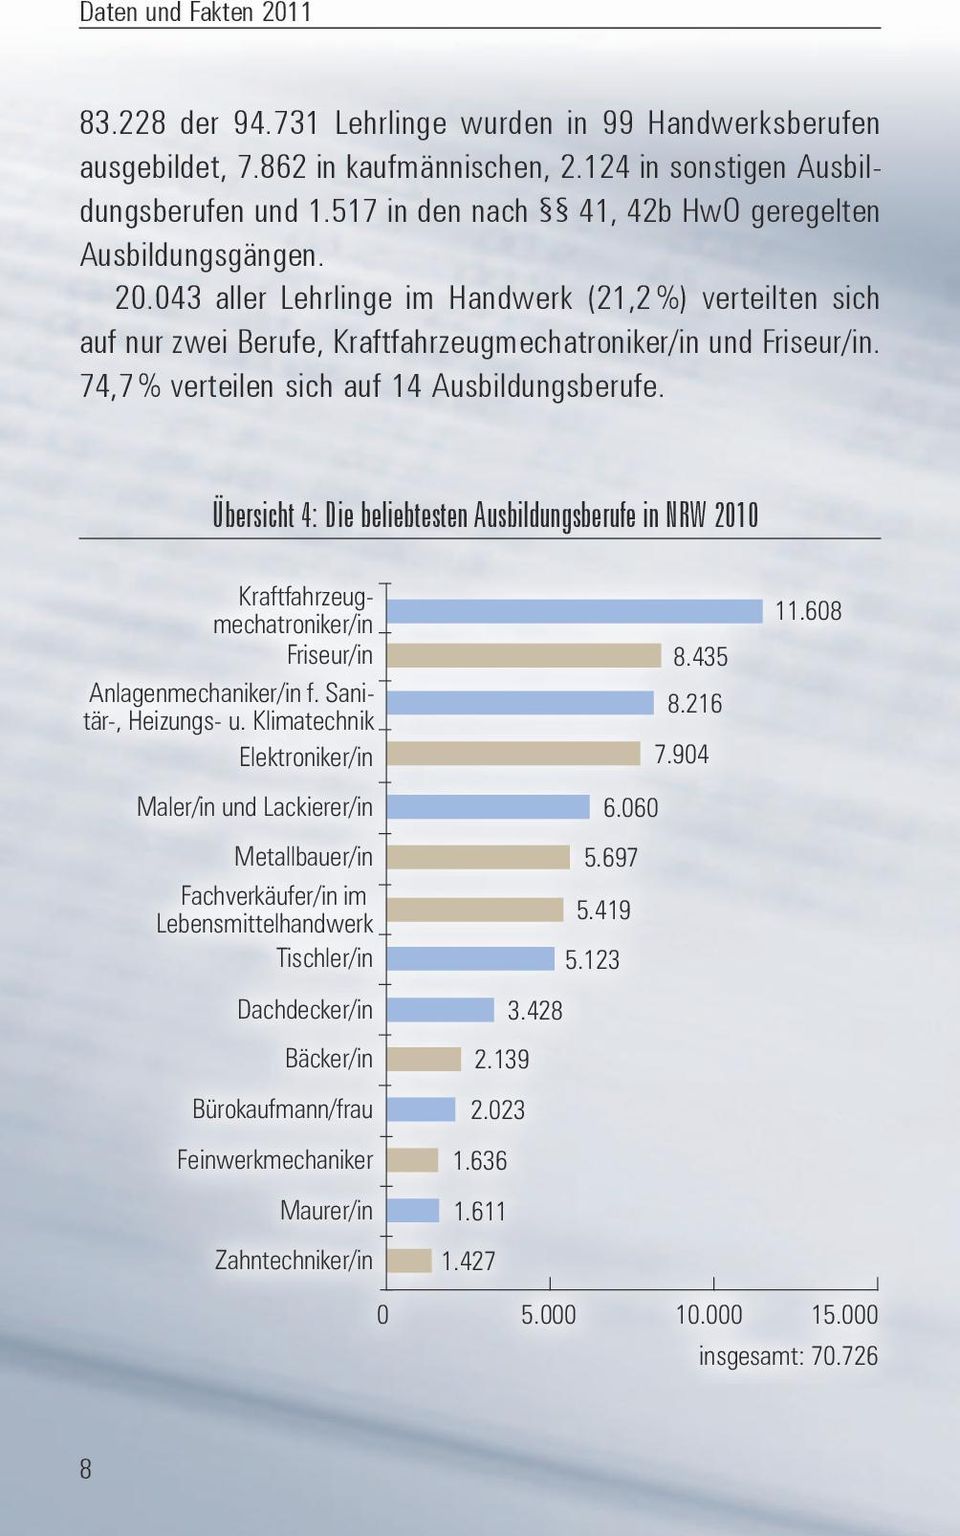 Übersicht 4: Die beliebtesten Ausbildungsberufe in NRW 2010 Kraftfahrzeugmechatroniker/in 11.608 Friseur/in 8.435 Anlagenmechaniker/in f. Sanitär-, Heizungs- u. Klimatechnik 8.216 Elektroniker/in 7.